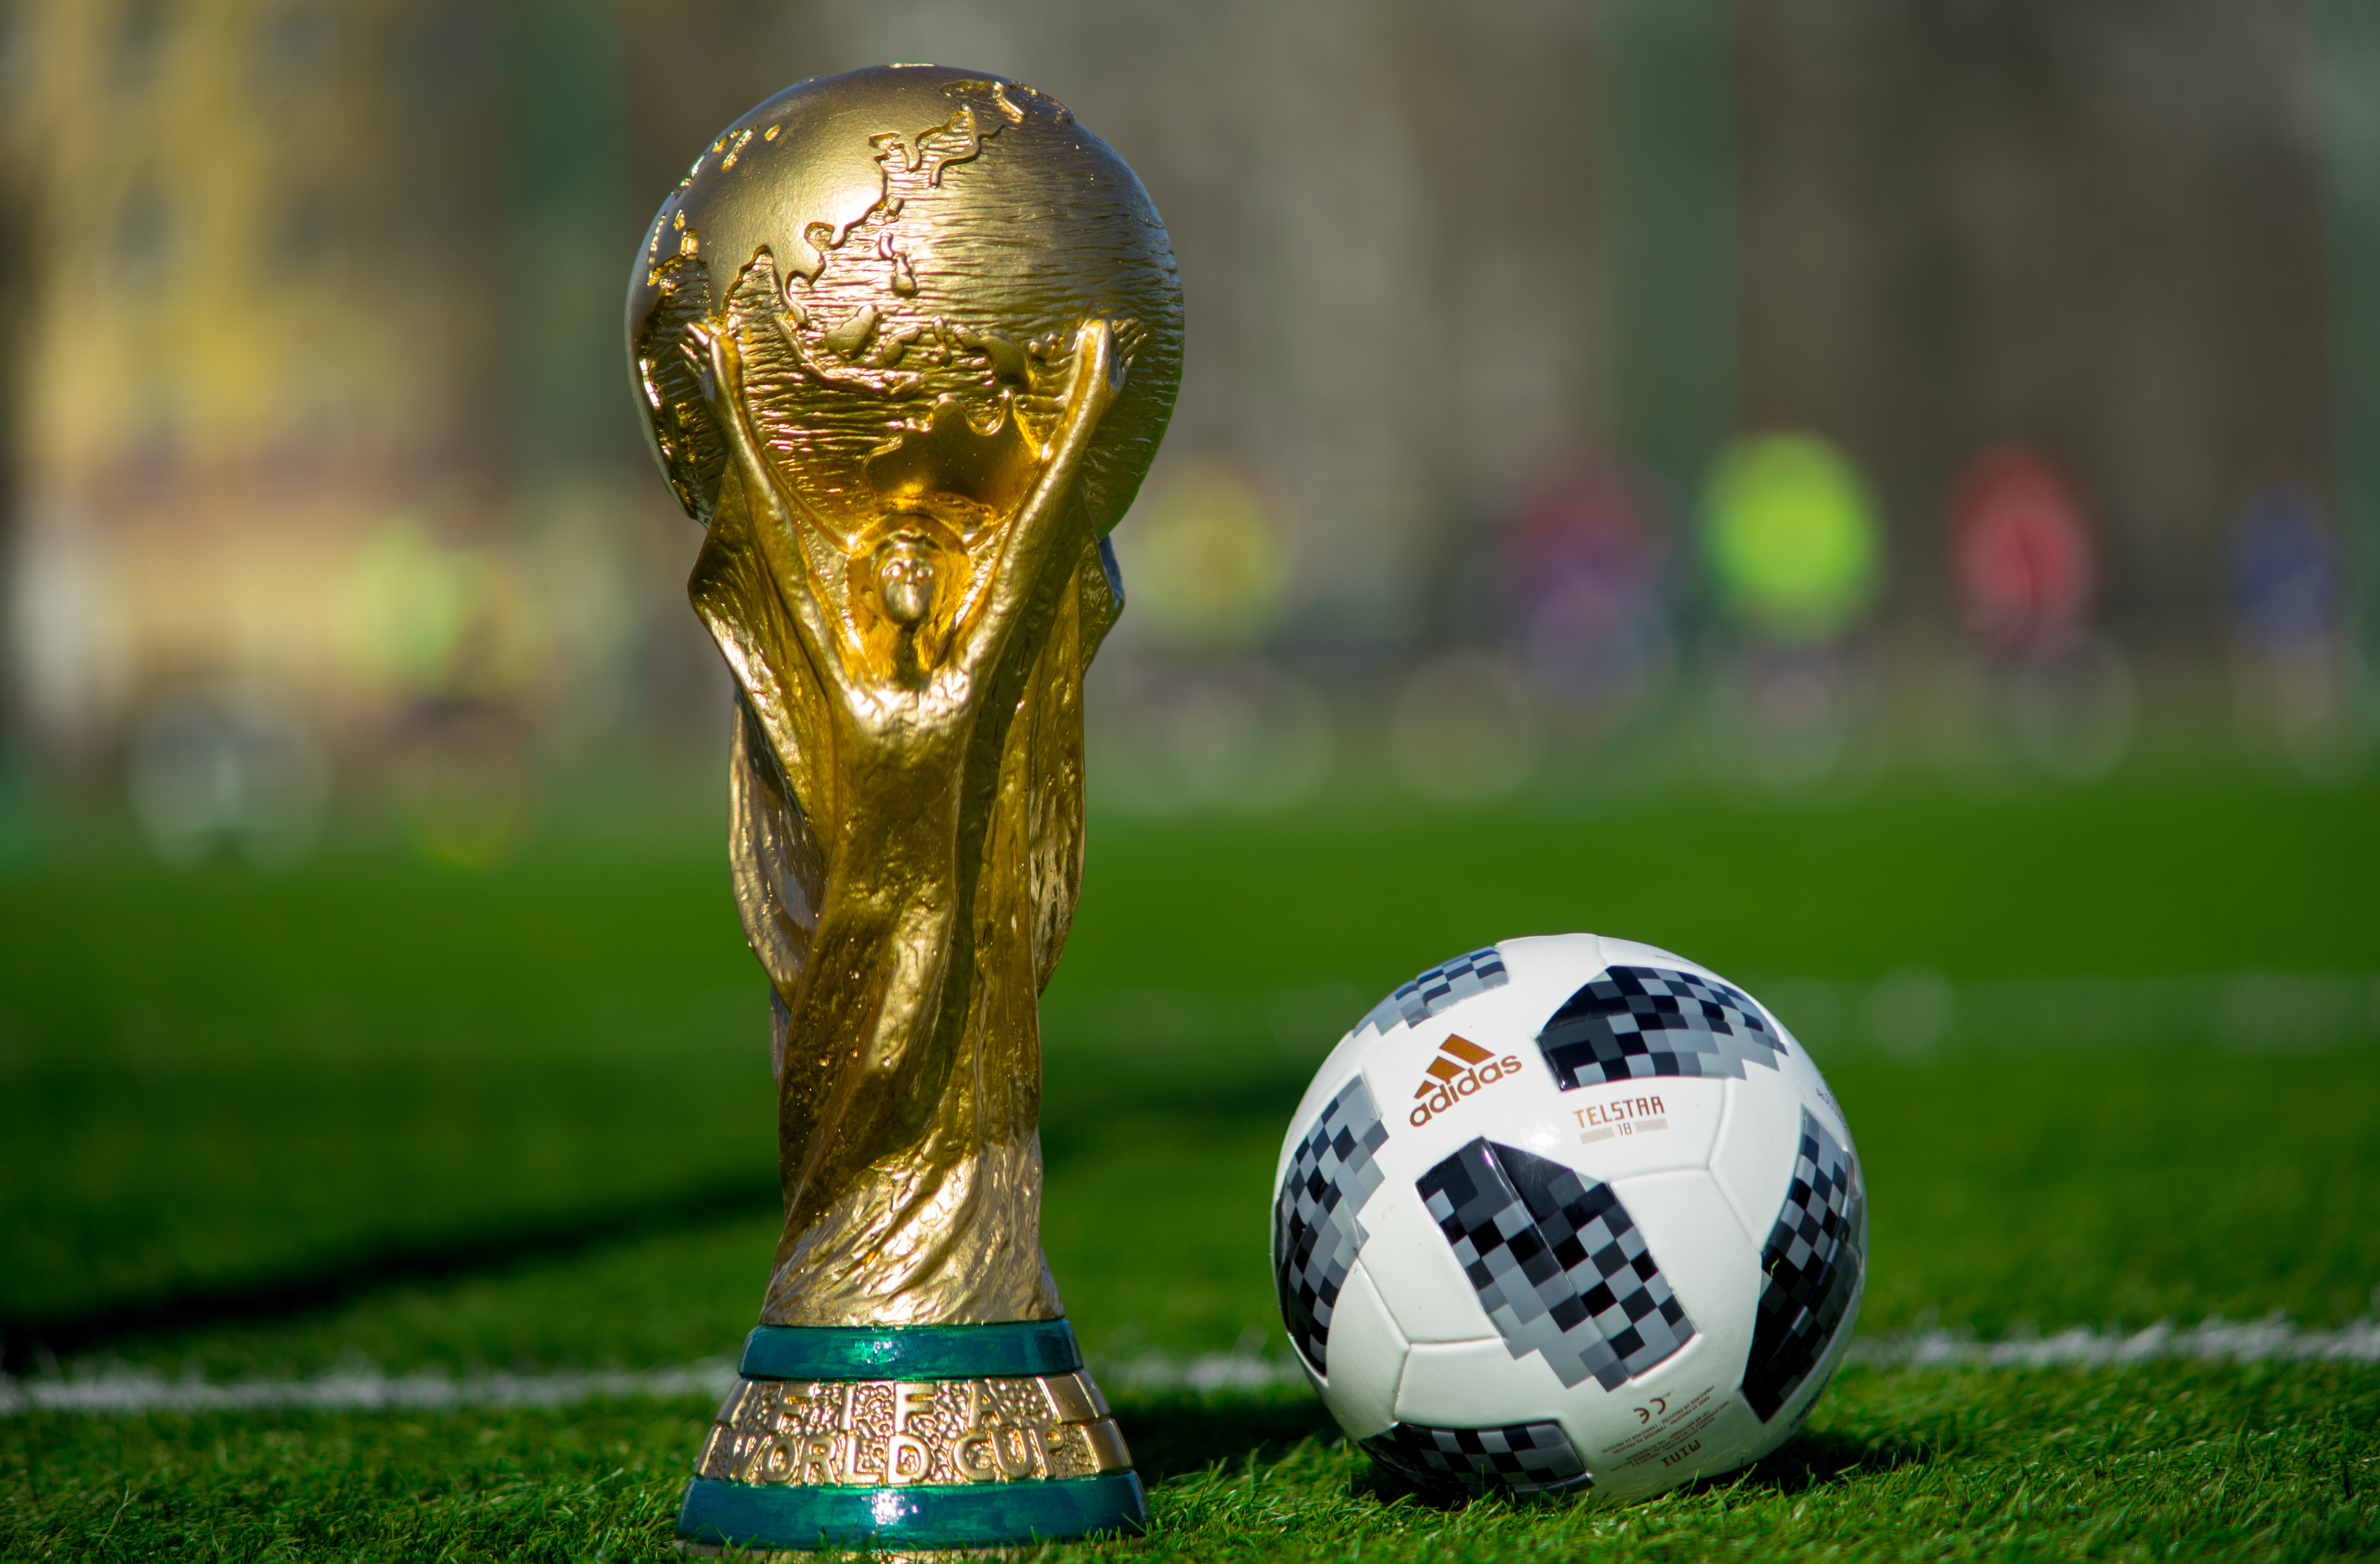 World s cup. FIFA World Cup 2018 мяч. Футбольный мяч FIFA World Cup Qatar 2022.